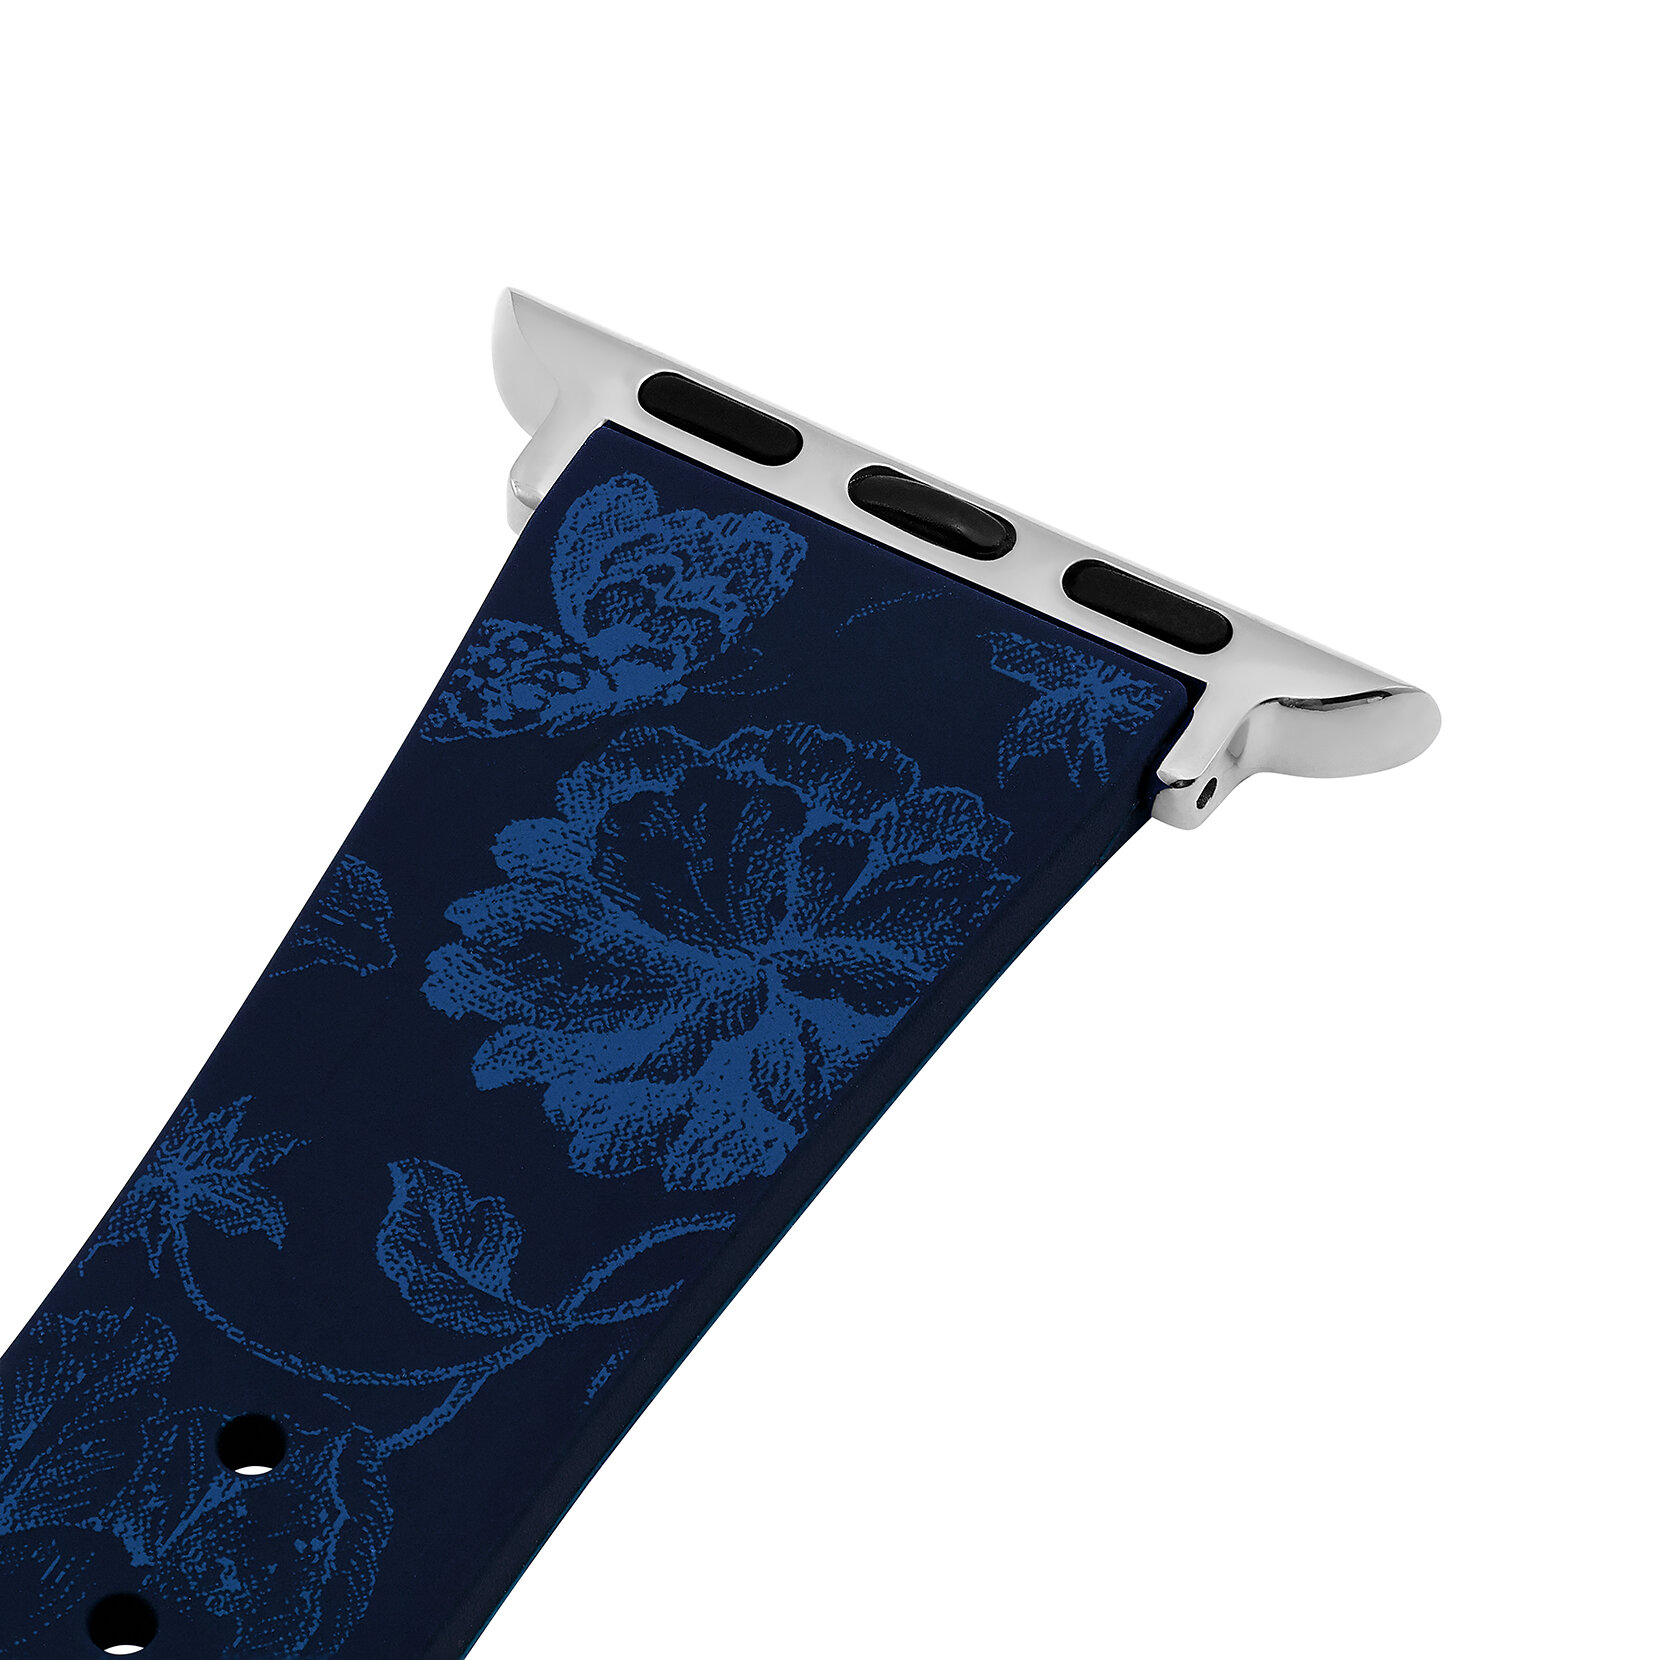 Bracelet en silicone Bleu saphir avec imprimé floral Bleu marine